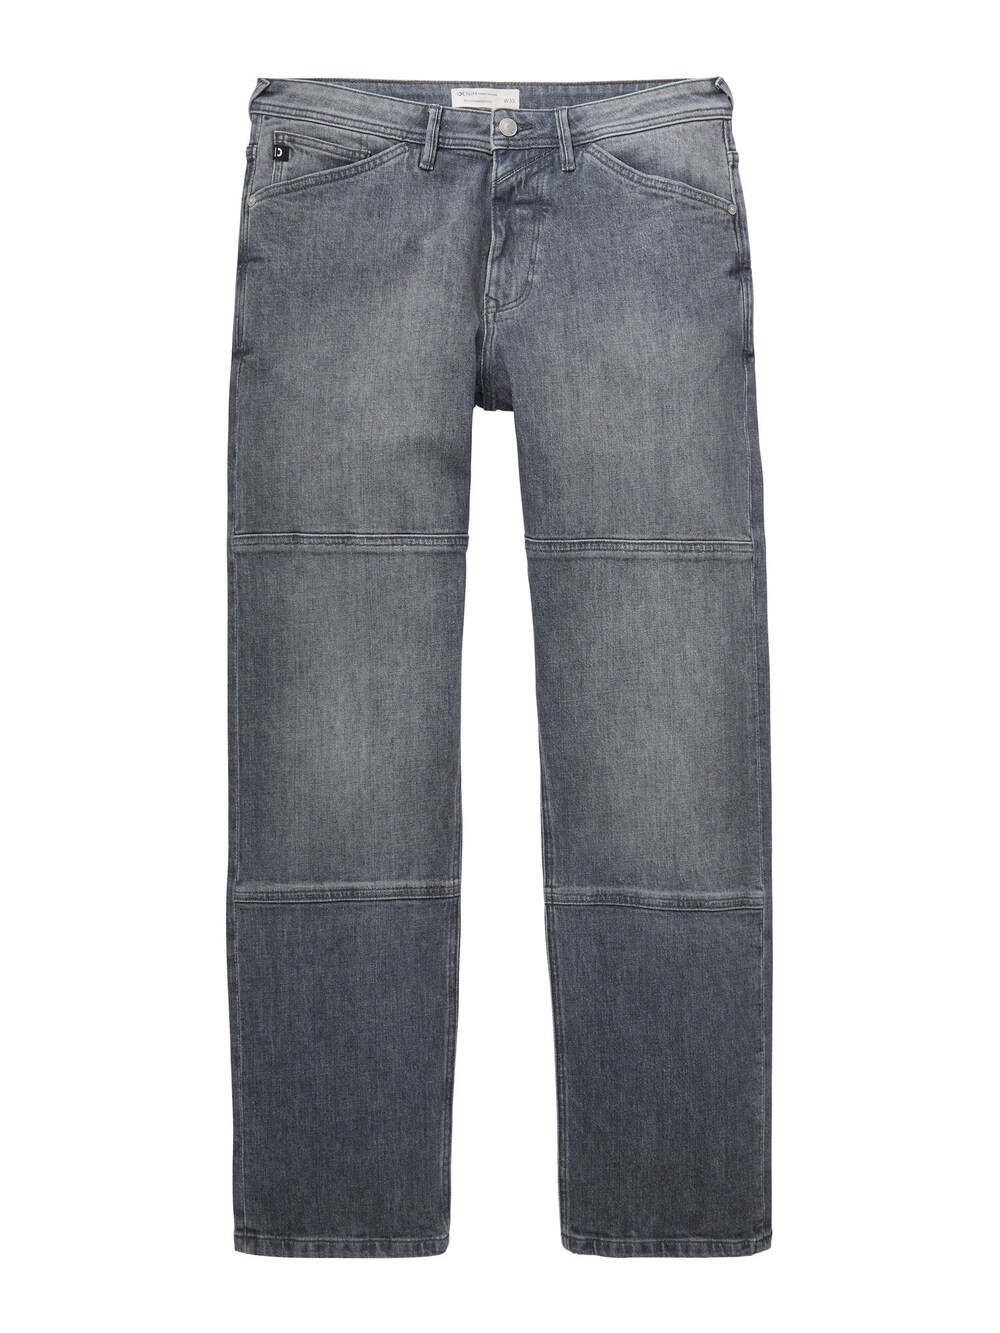 Обычные джинсы TOM TAILOR DENIM, серый джинсы tom tailor denim piers slim серый